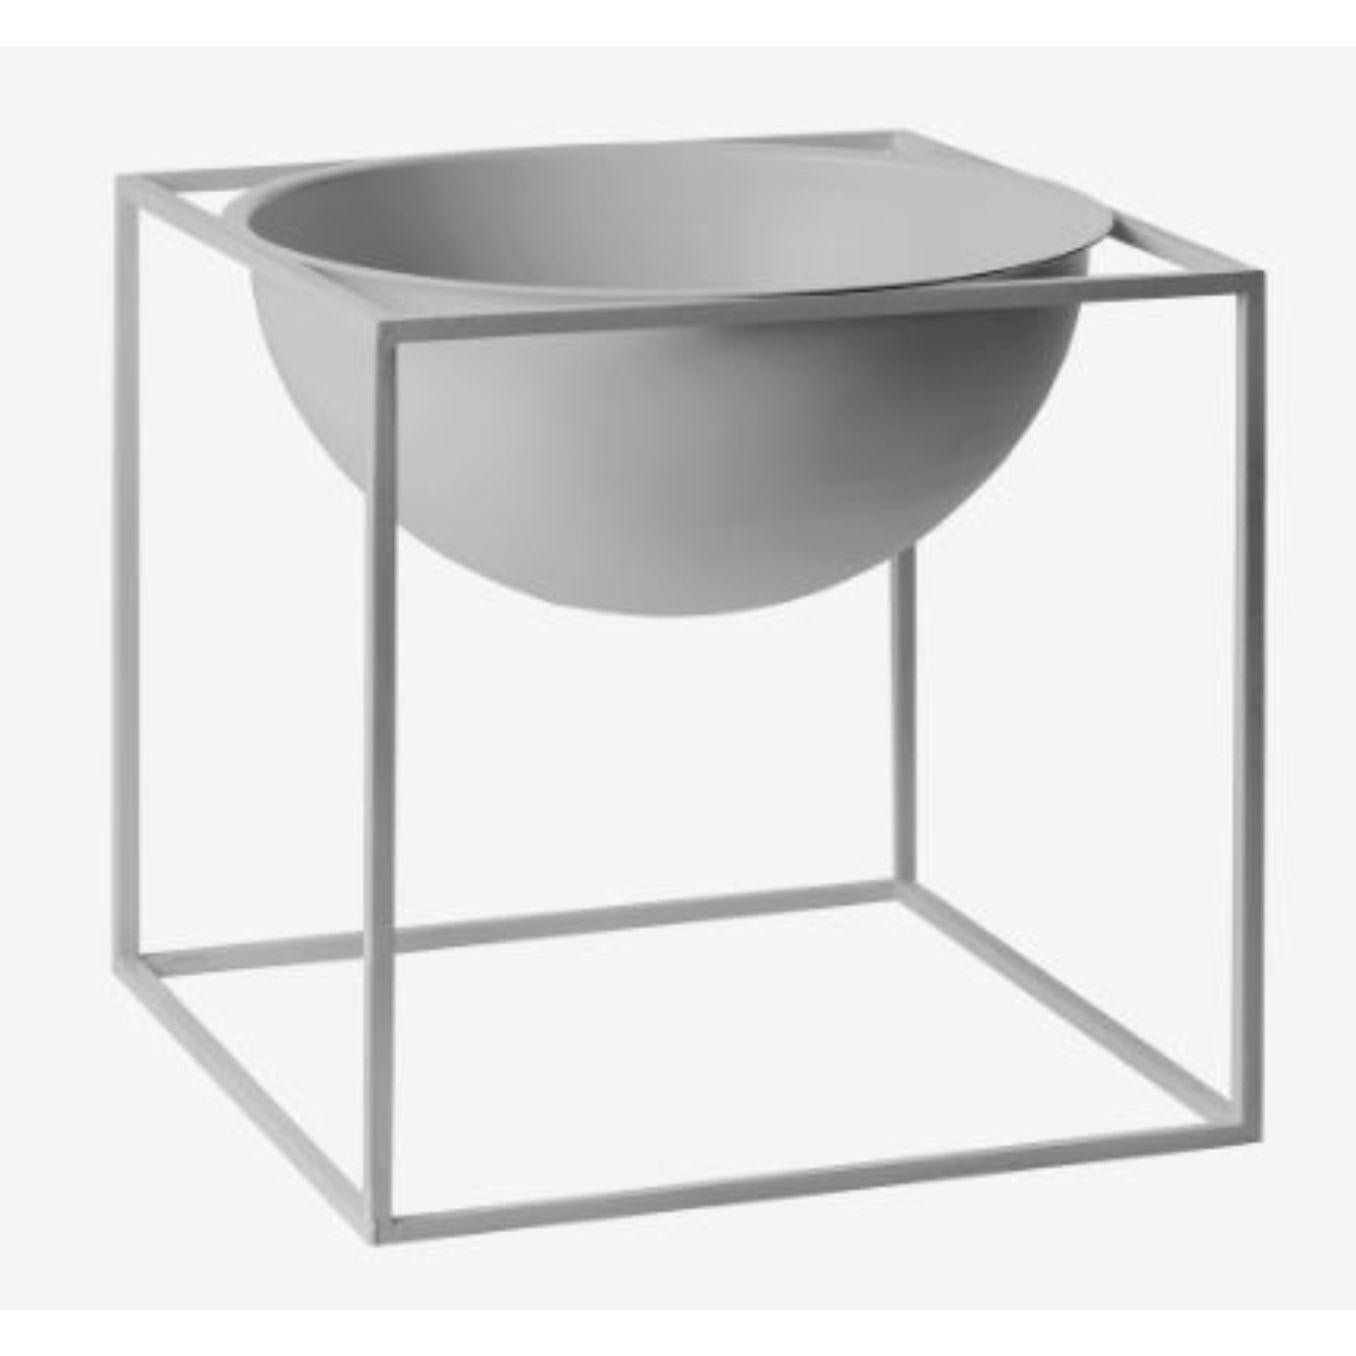 Grand bol Kubus gris froid de Lassen
Dimensions : D 23 x L 23 x H 23 cm 
Matériaux : Métal 
Poids : 3 kg

Le Kubus Bowl est basé sur des croquis originaux de Mogens Lassen, et contient des éléments du Bauhaus, dont Mogens Lassen s'est inspiré. Le